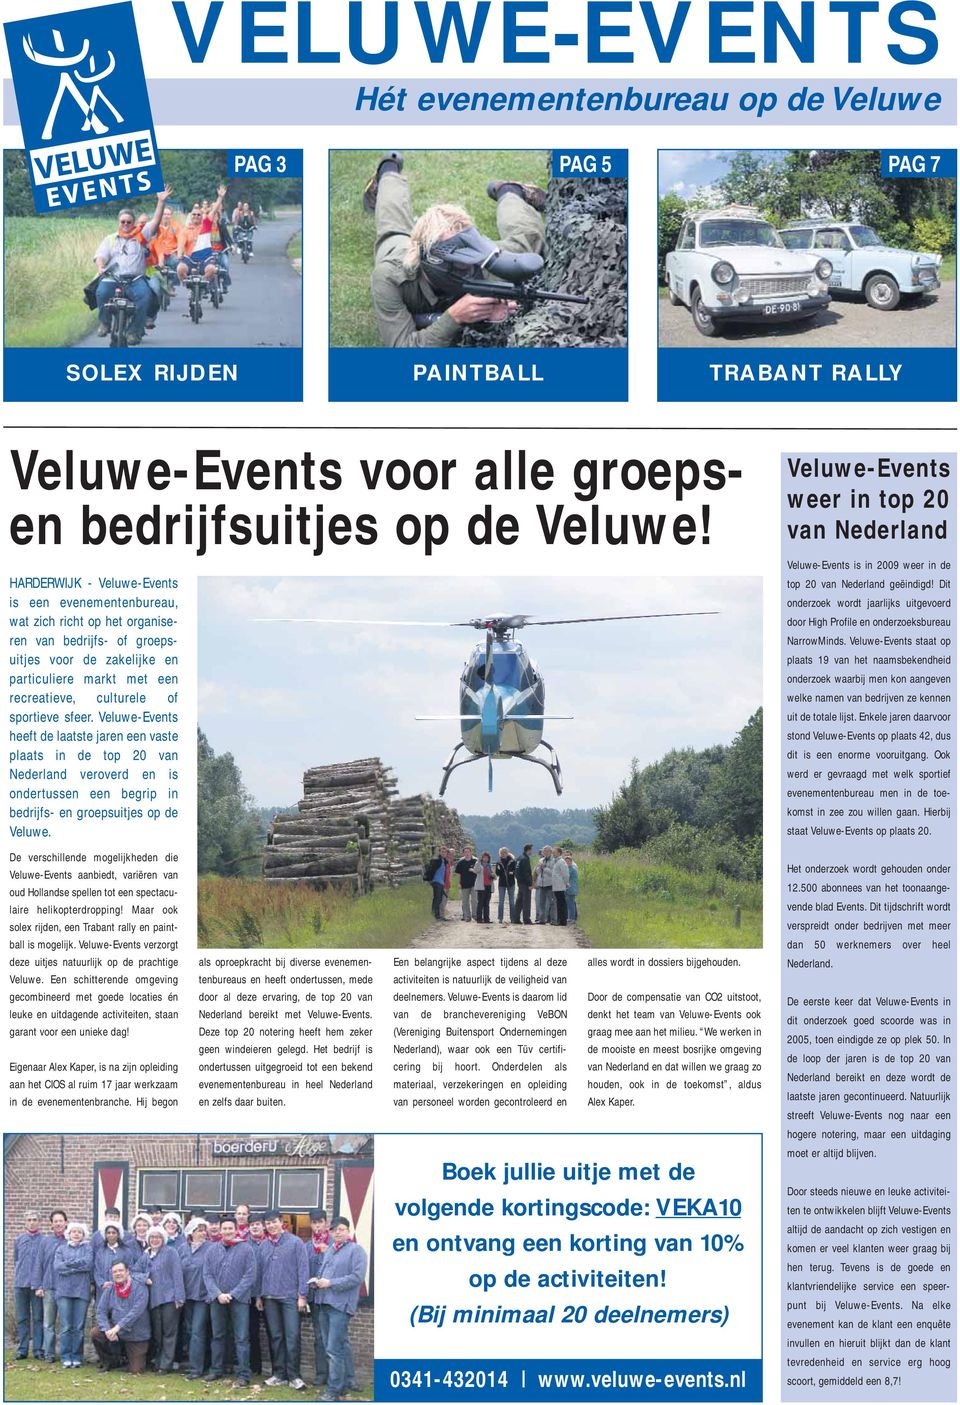 sportieve sfeer. Veluwe-Events heeft de laatste jaren een vaste plaats in de top 20 van Nederland veroverd en is ondertussen een begrip in bedrijfs- en groepsuitjes op de Veluwe.